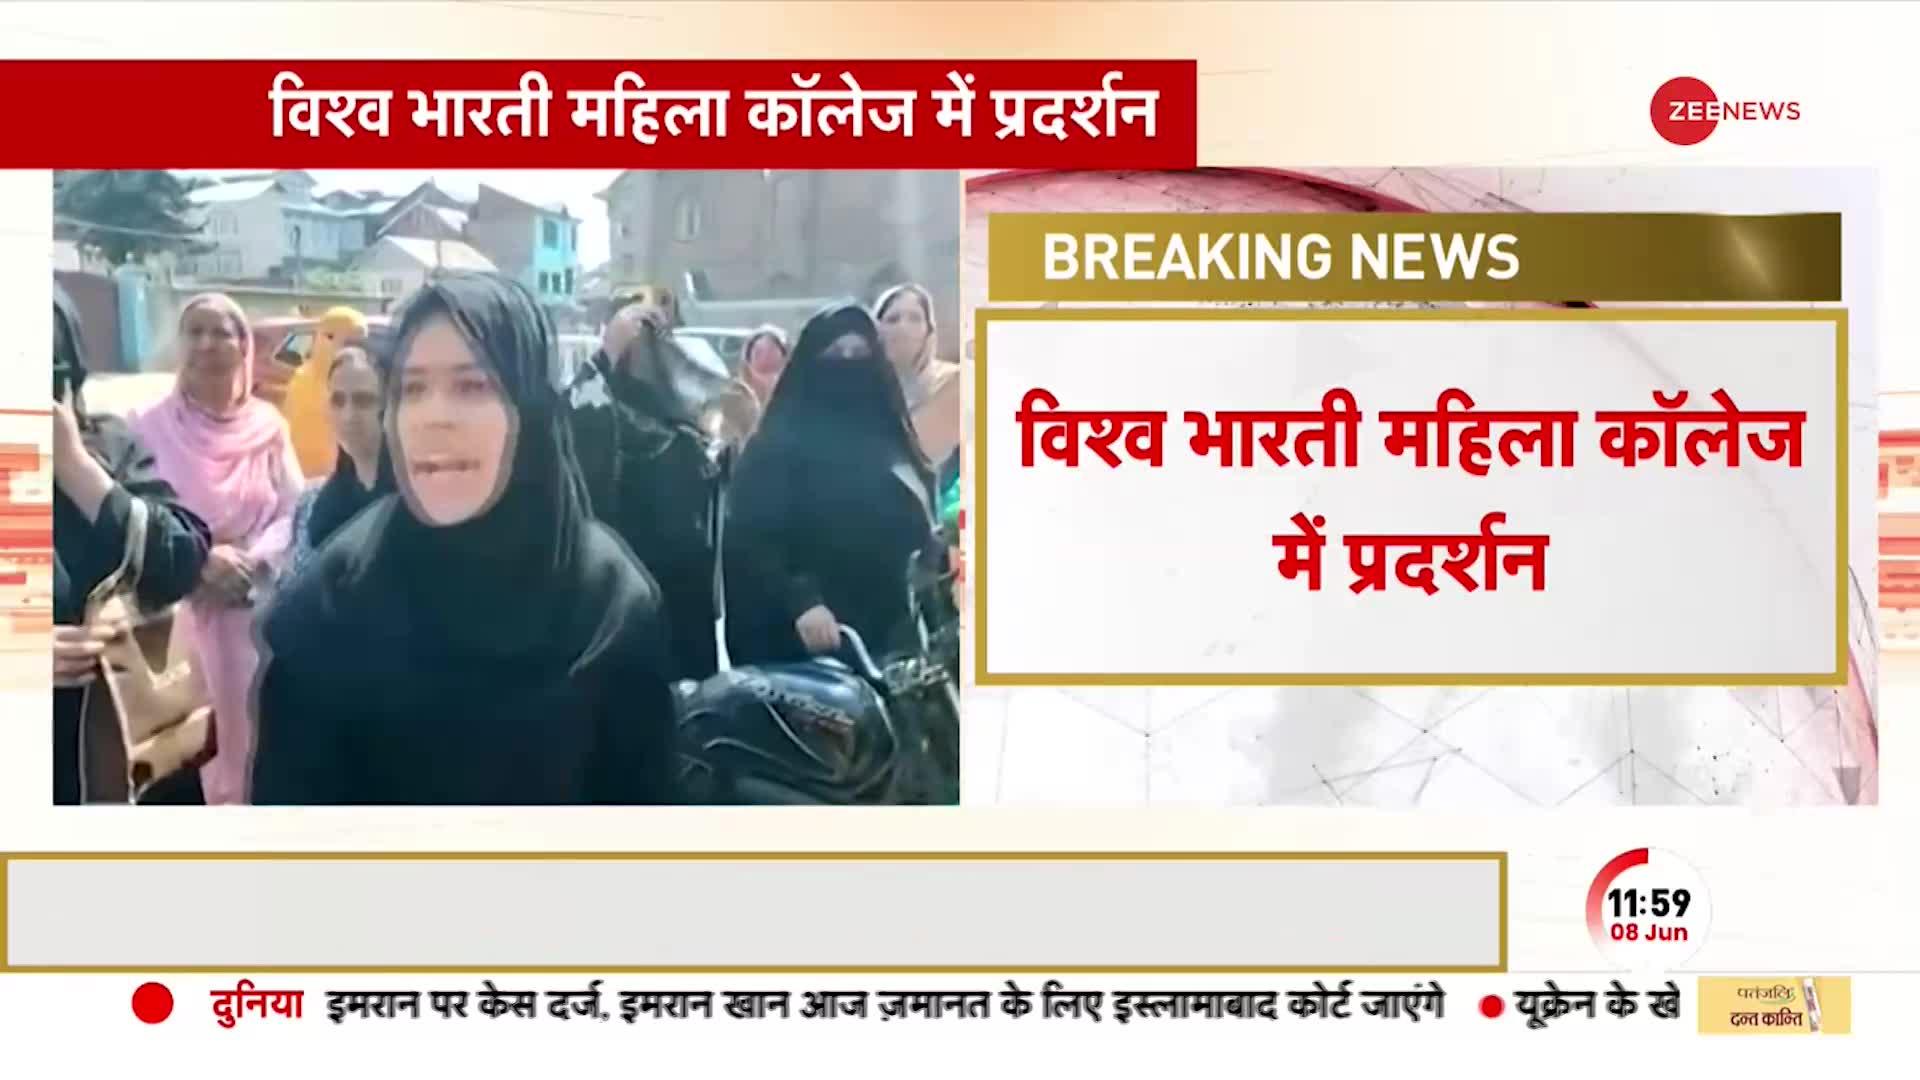 BREAKING NEWS: श्रीनगर के कॉलेज में हिजाब बैन के खिलाफ प्रदर्शन, छात्राओं ने की नारेबाजी